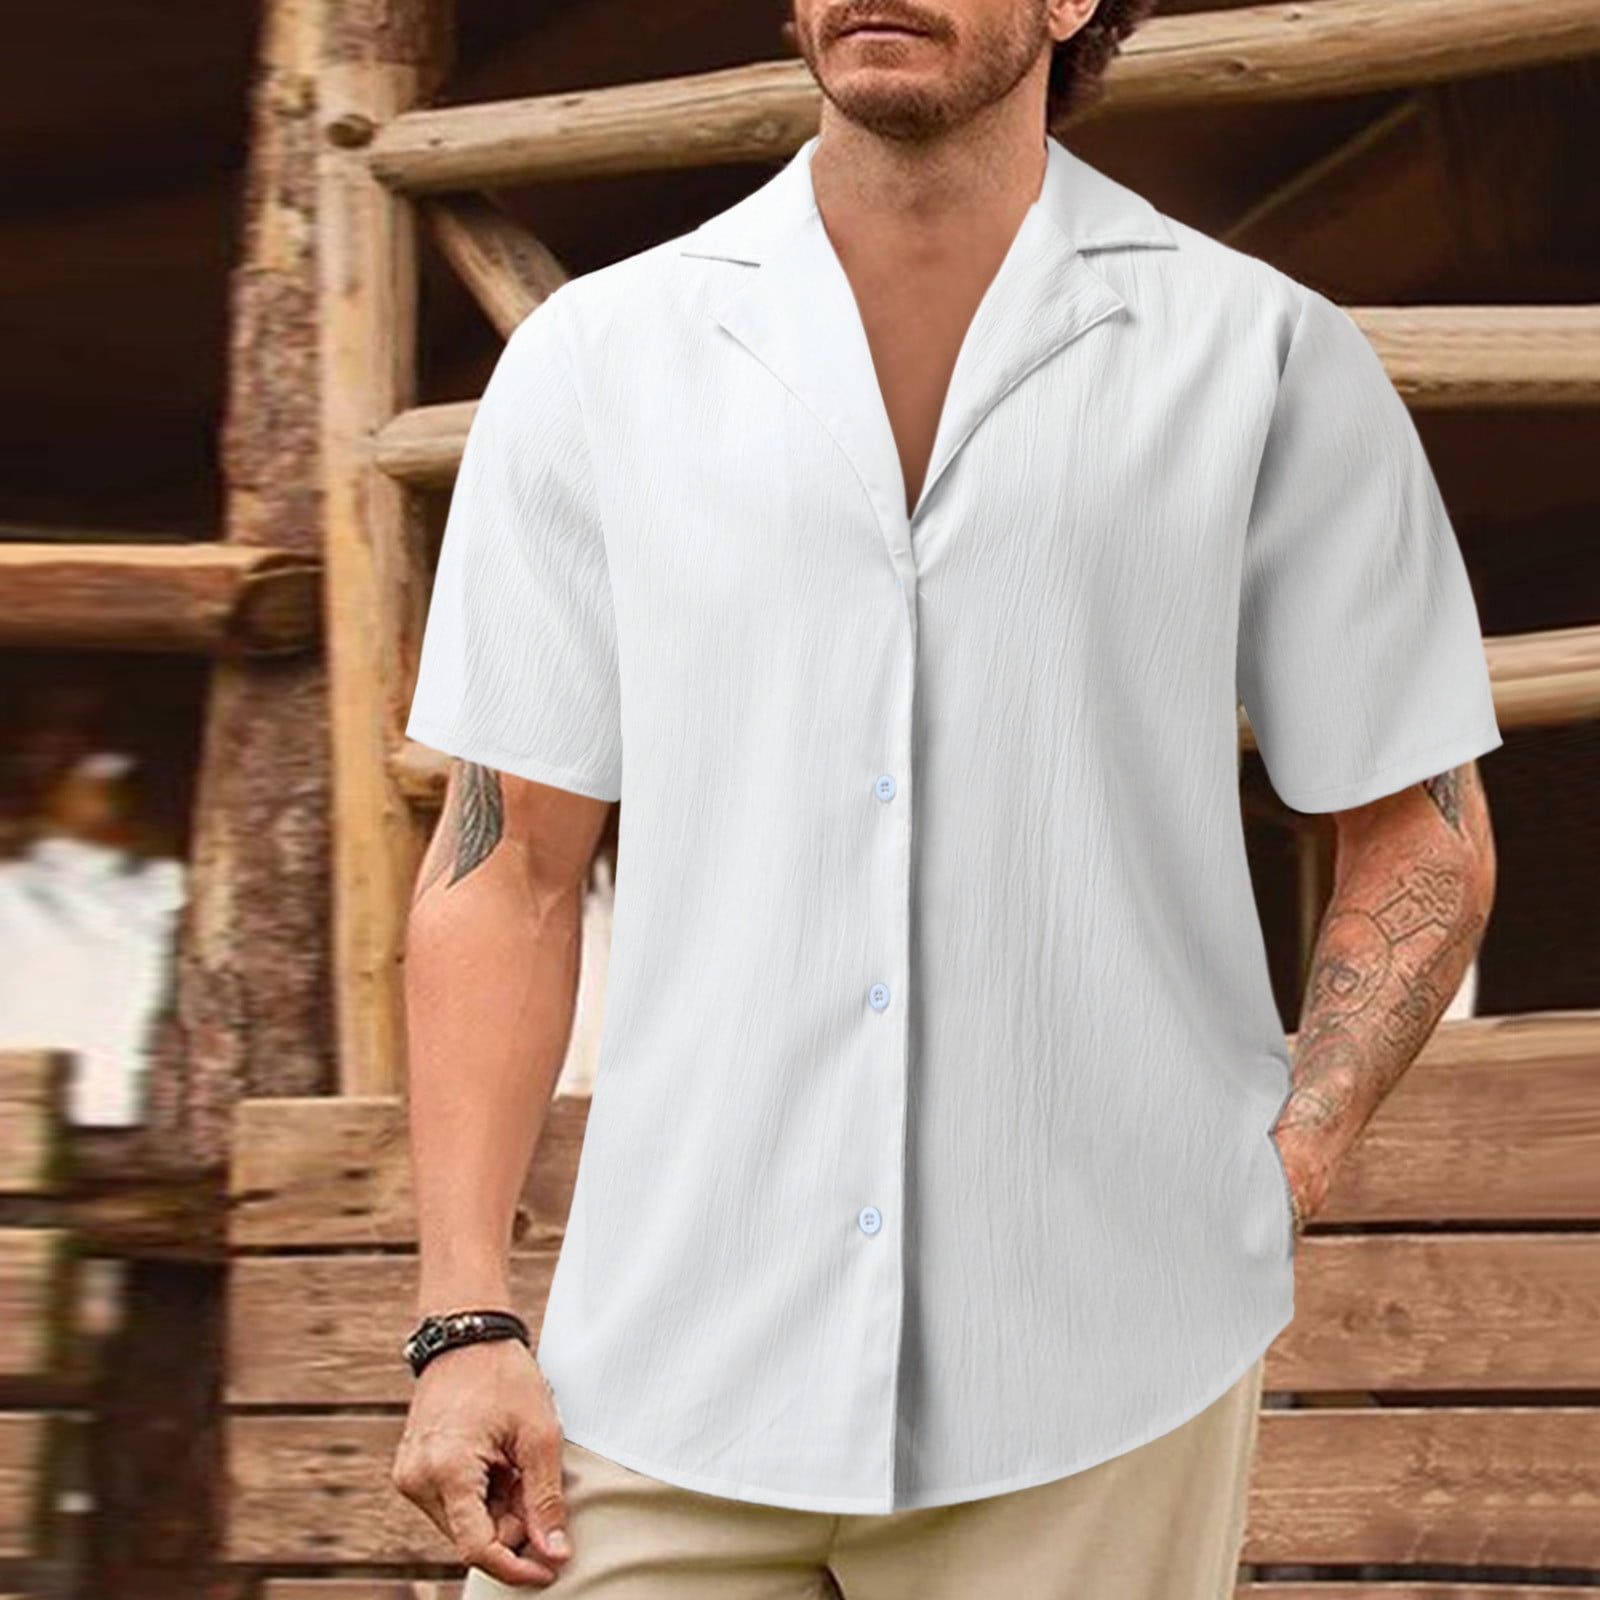 white men’s dress shirts